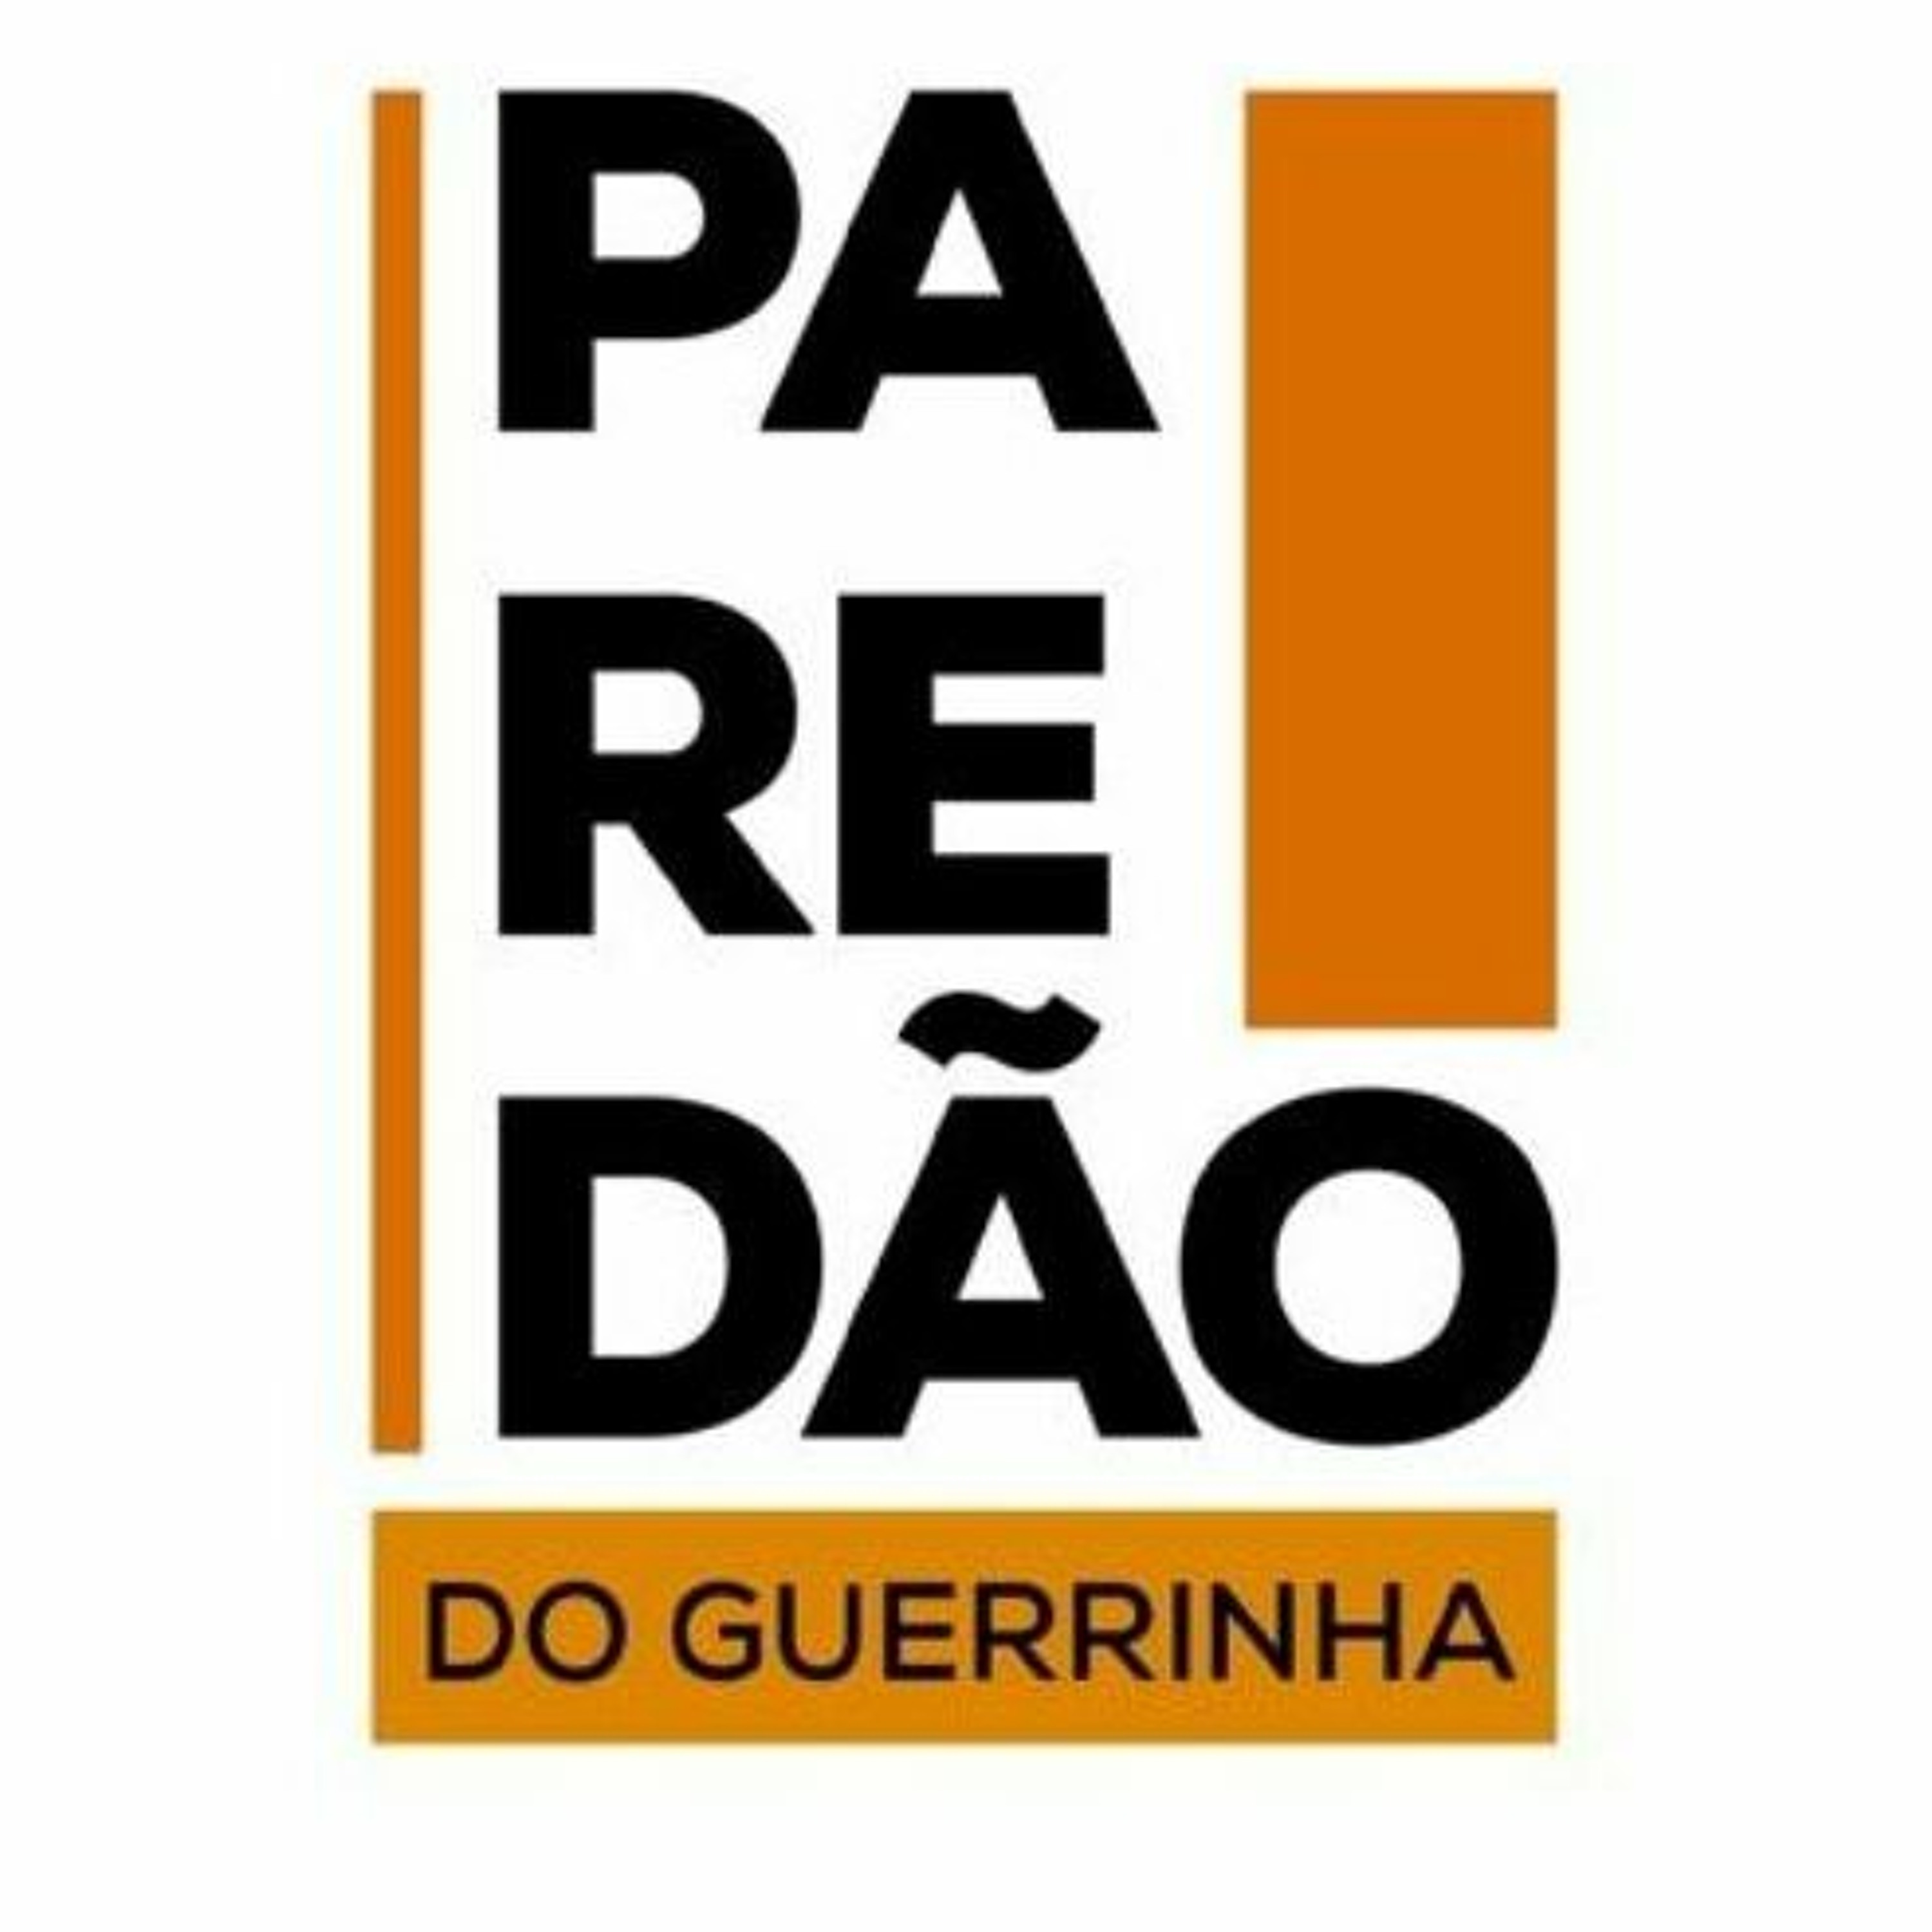 Stream Giro Gre-Nal #358 - a vitória do Grêmio sobre o Botafogo e os jogos  da Dupla no fim de semana by Gaúcha